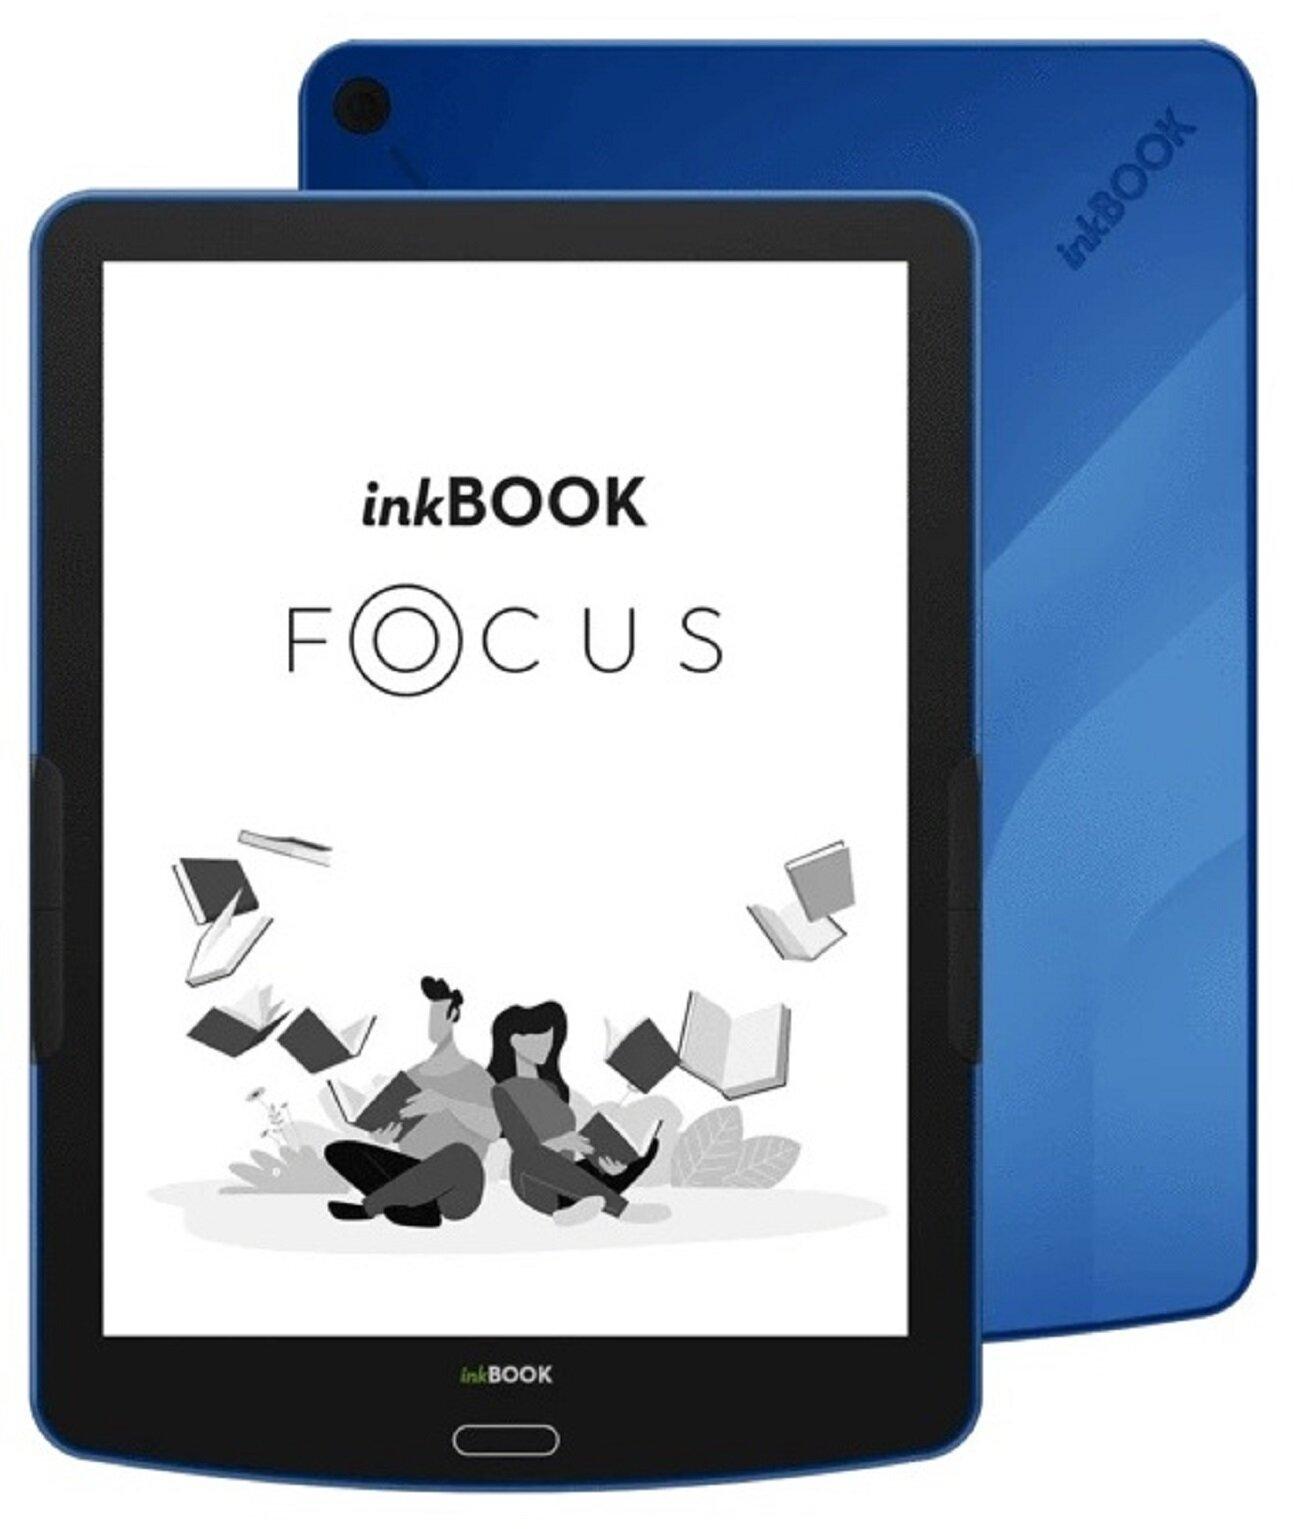 Inkbook Focus